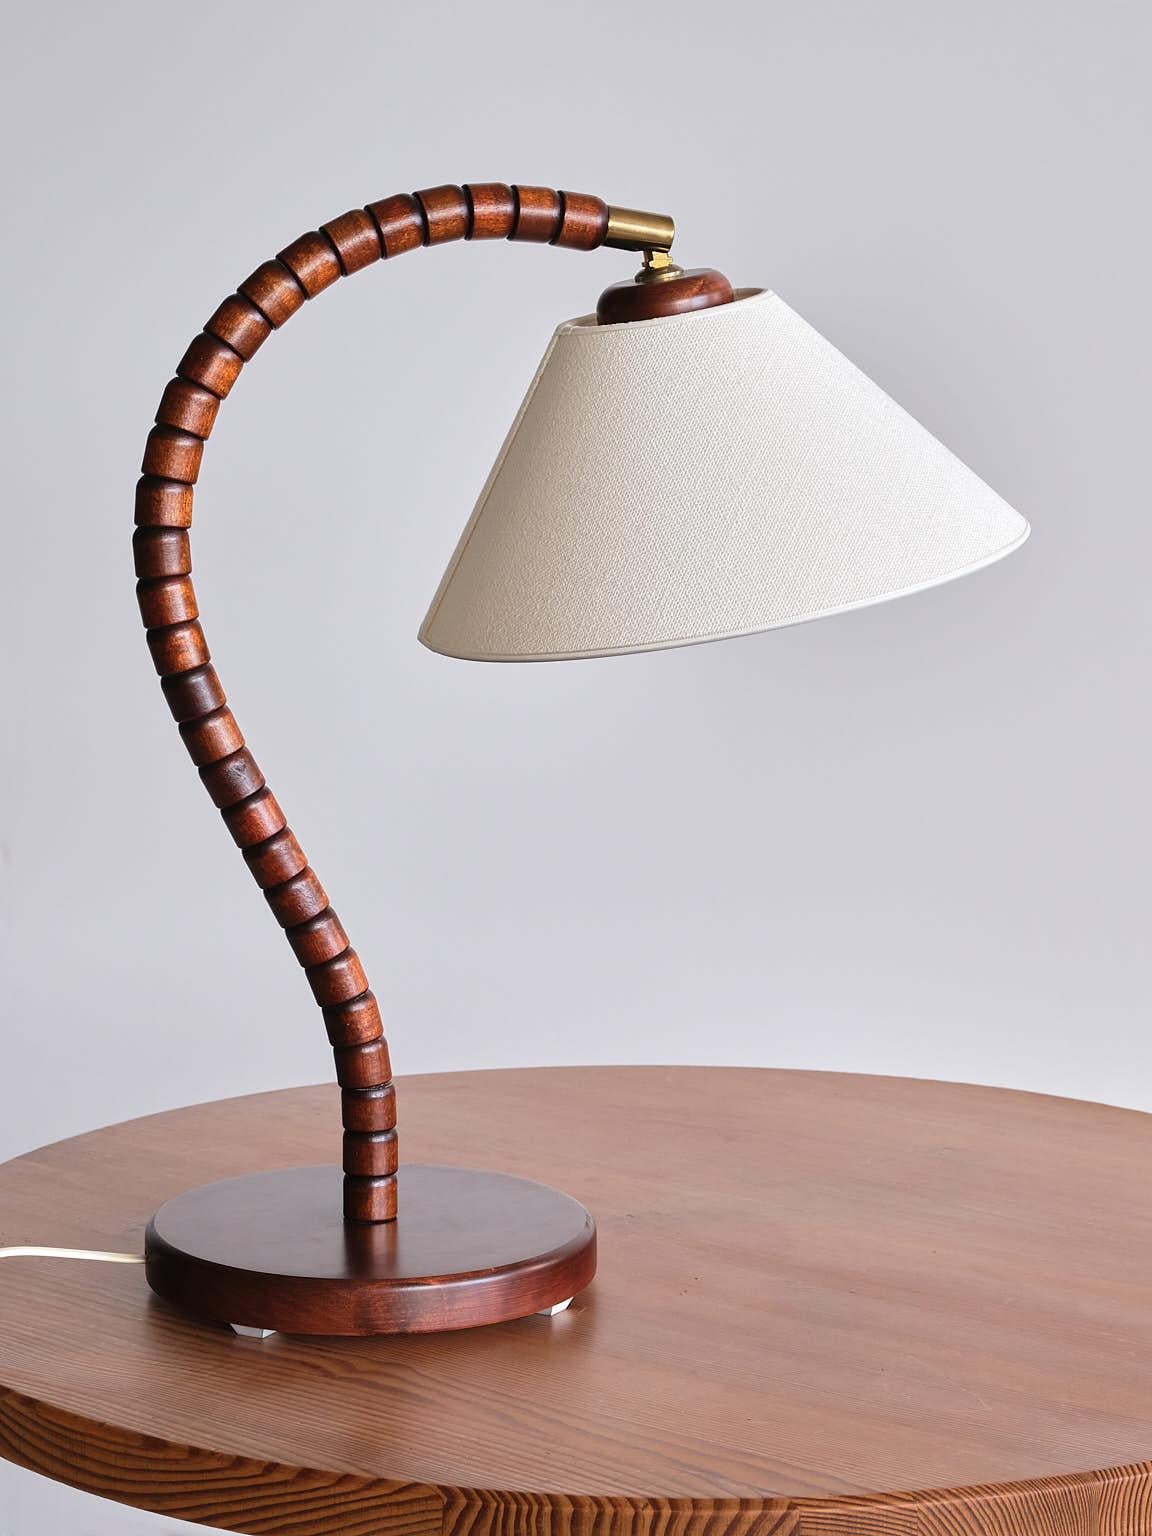 Cette lampe de table étonnante a été produite par Markslöjd à Kinna, en Suède, dans les années 1970. Le design est marqué par le cadre sculptural de forme organique reposant sur une base circulaire. La base est en hêtre massif teinté. Ferrure en